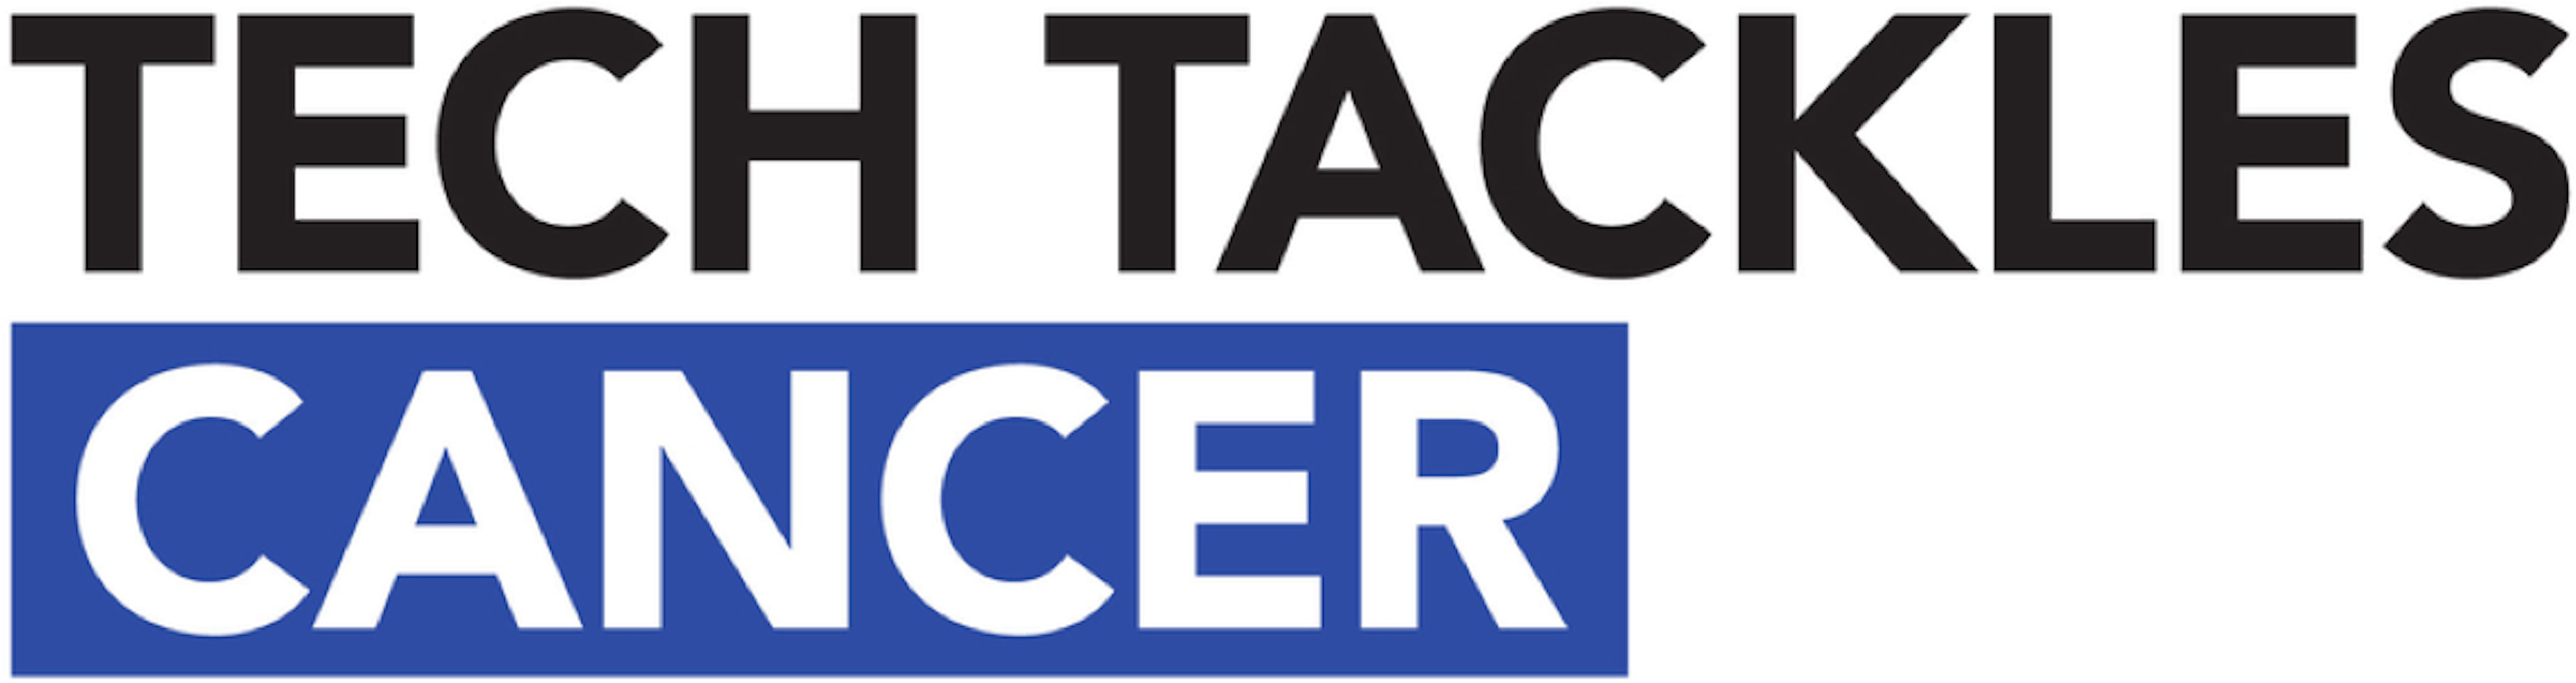 Tech tackles cancer logo